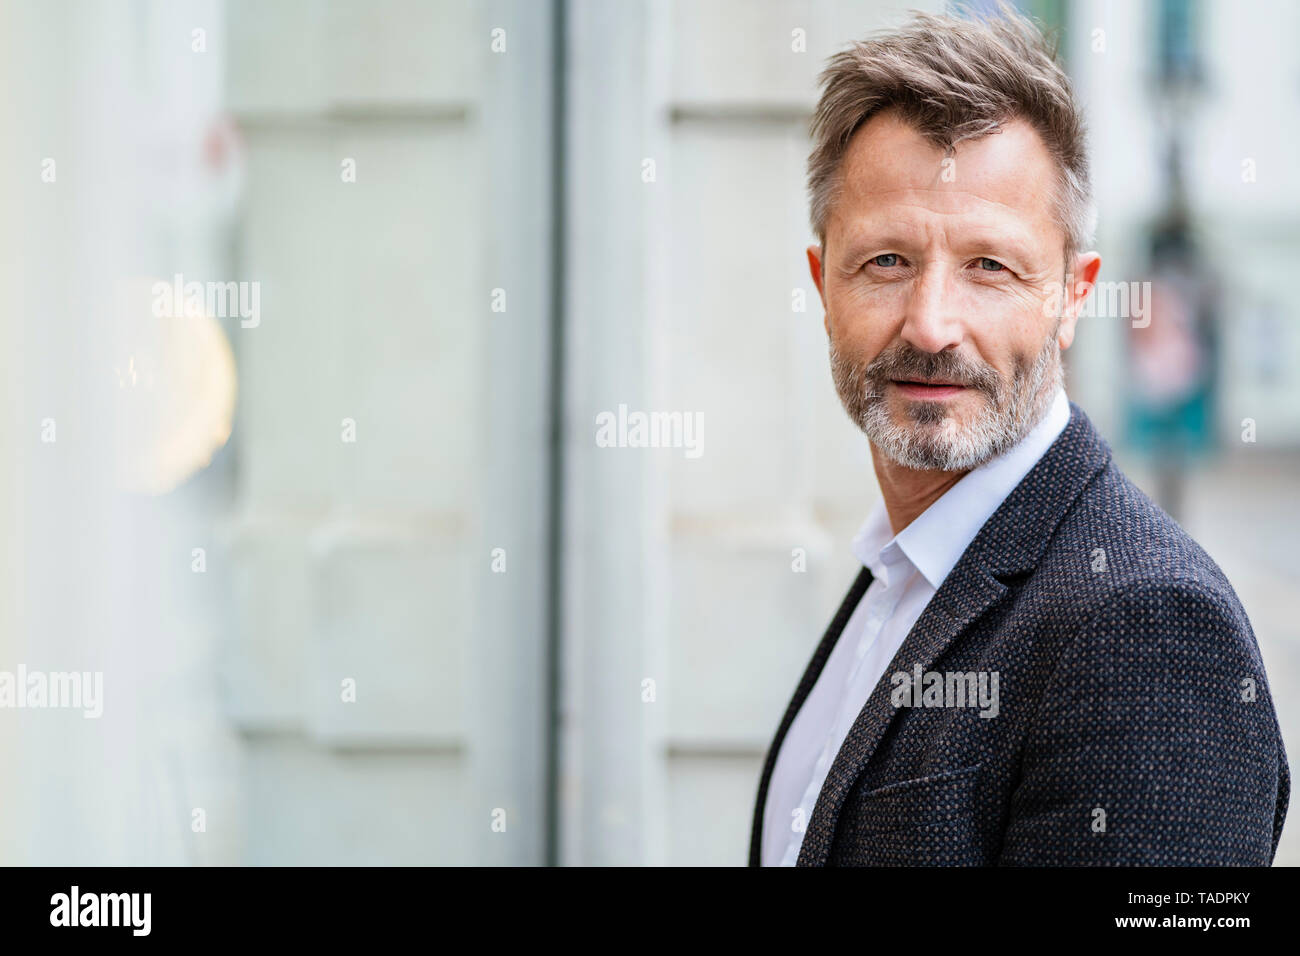 Portrait of mature businessman avec barbe grisonnante Banque D'Images